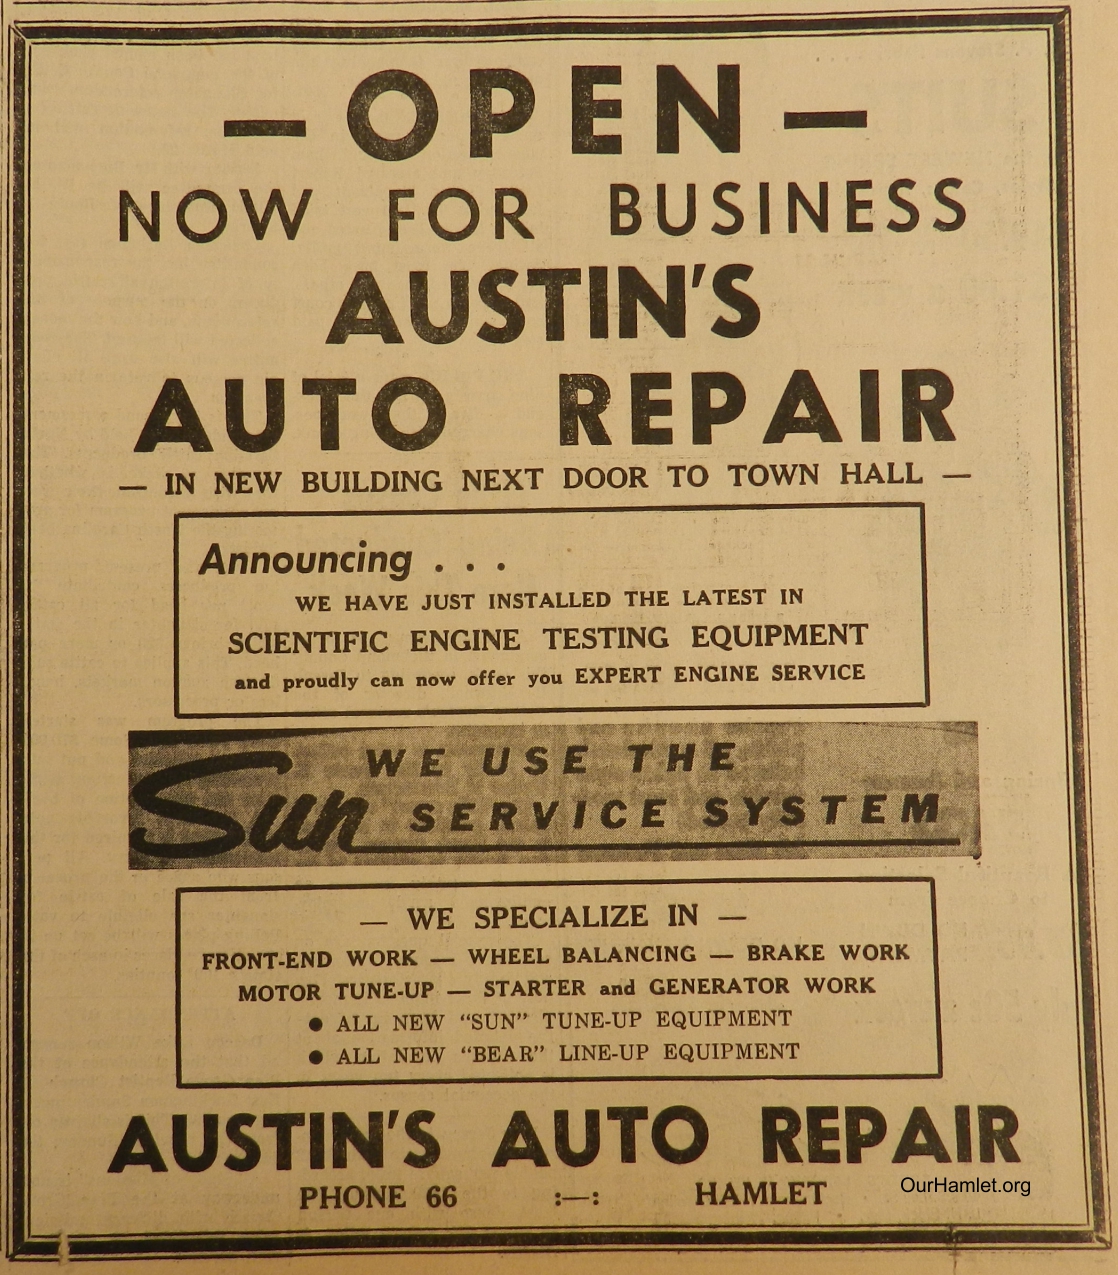 1961 Austins Auto Repair opening OH.jpg